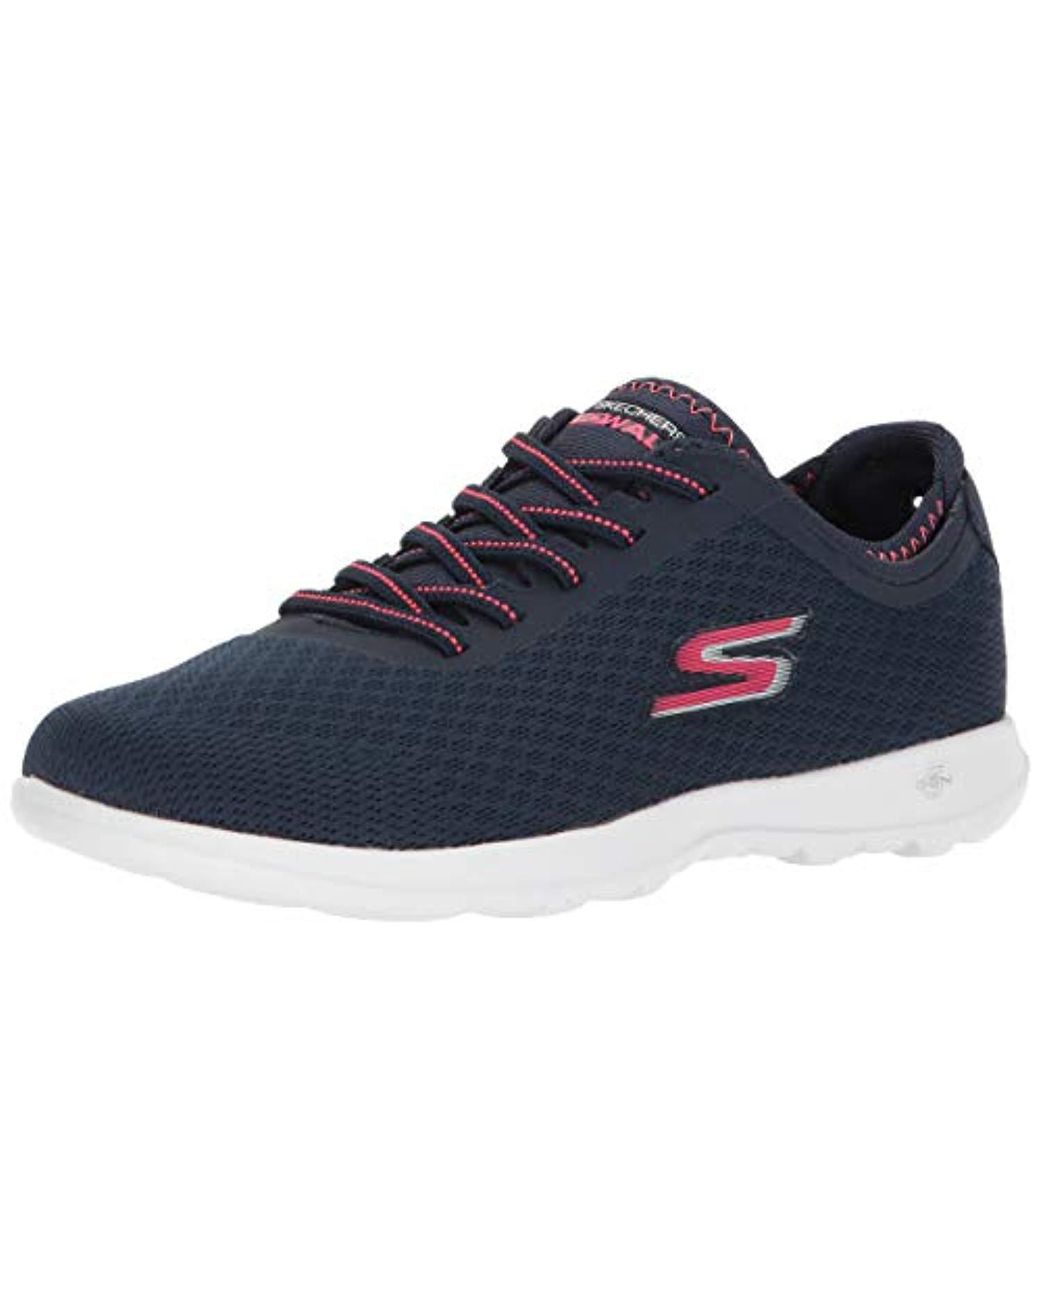 Skechers Go Walk Lite-15350 Sneaker in Navy/Pink (Blue) - Lyst